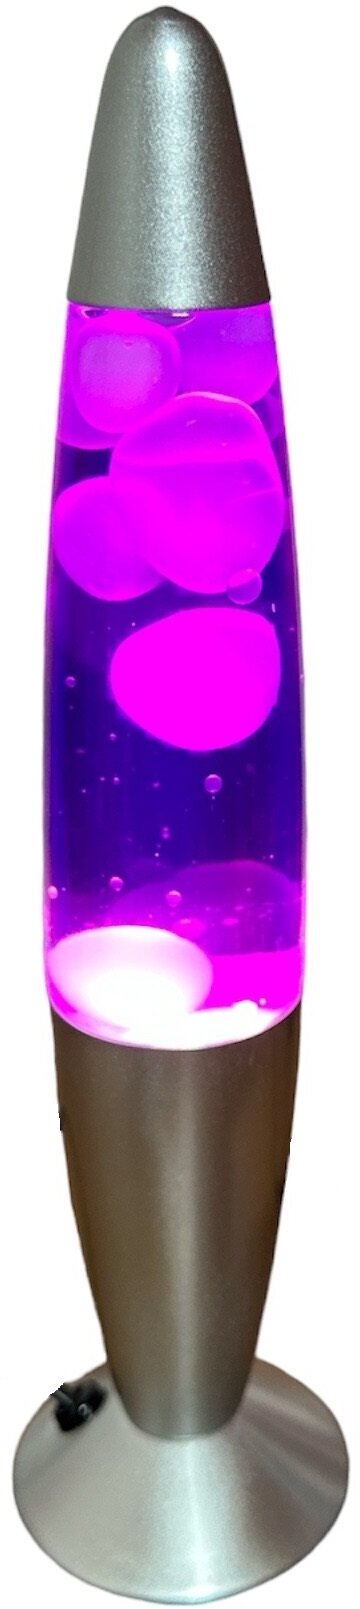 Лава лампа 35см фиолетовый белый цвет ночник светильник